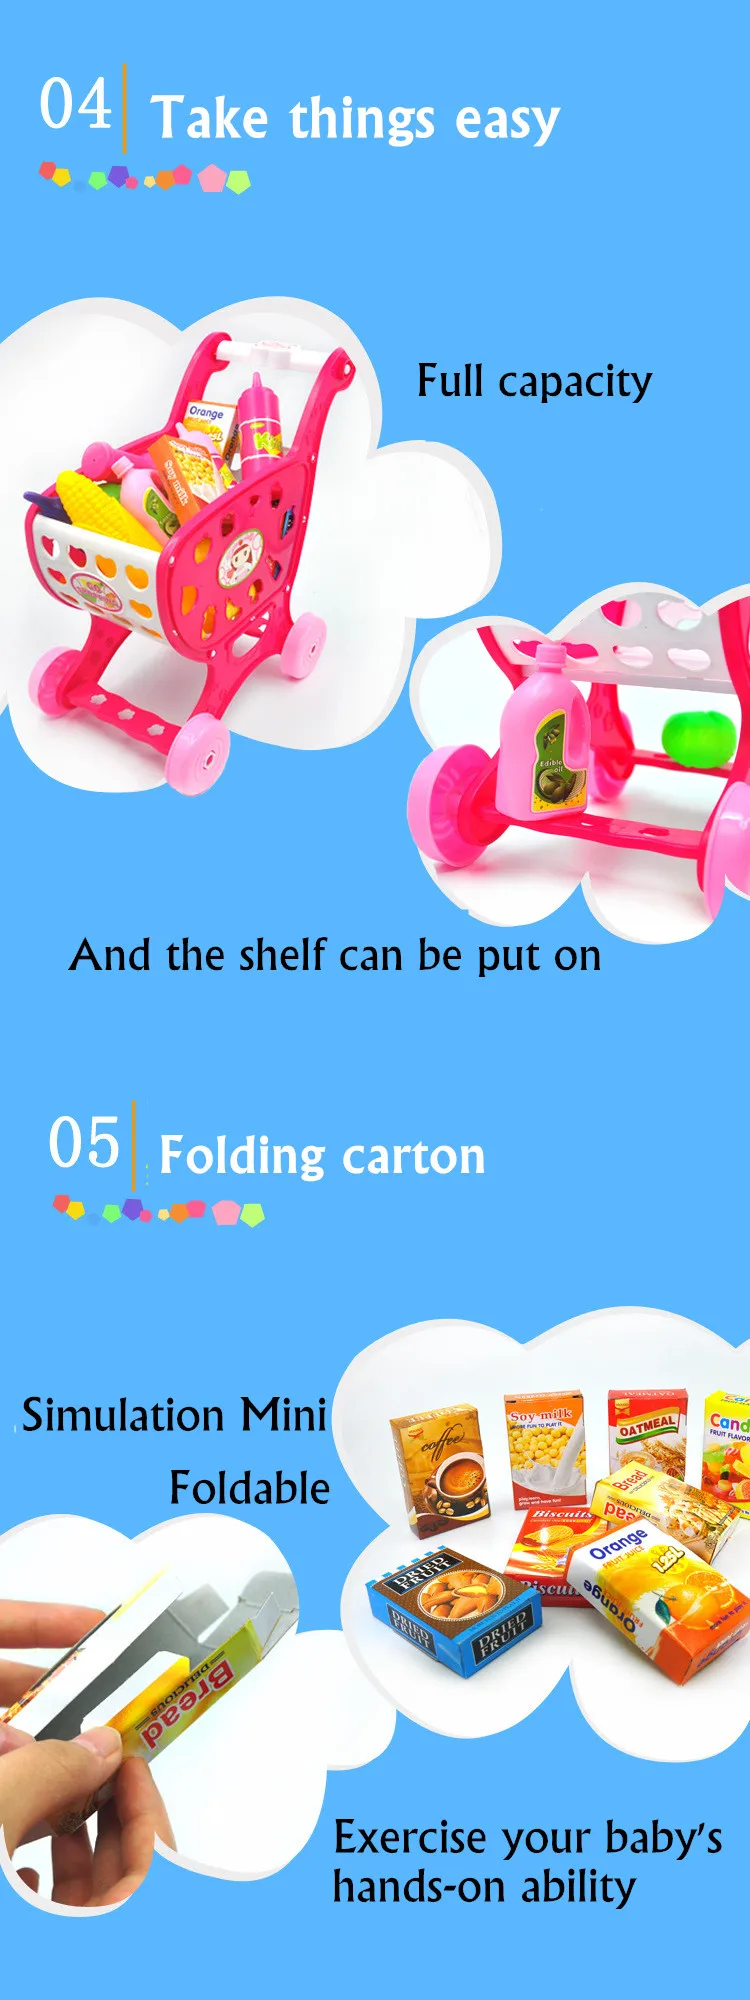 Mylitdear мини-корзина с Еда игрушка дочки набор складной моделирование корзину дети Ролевые игры игрушки в коробке